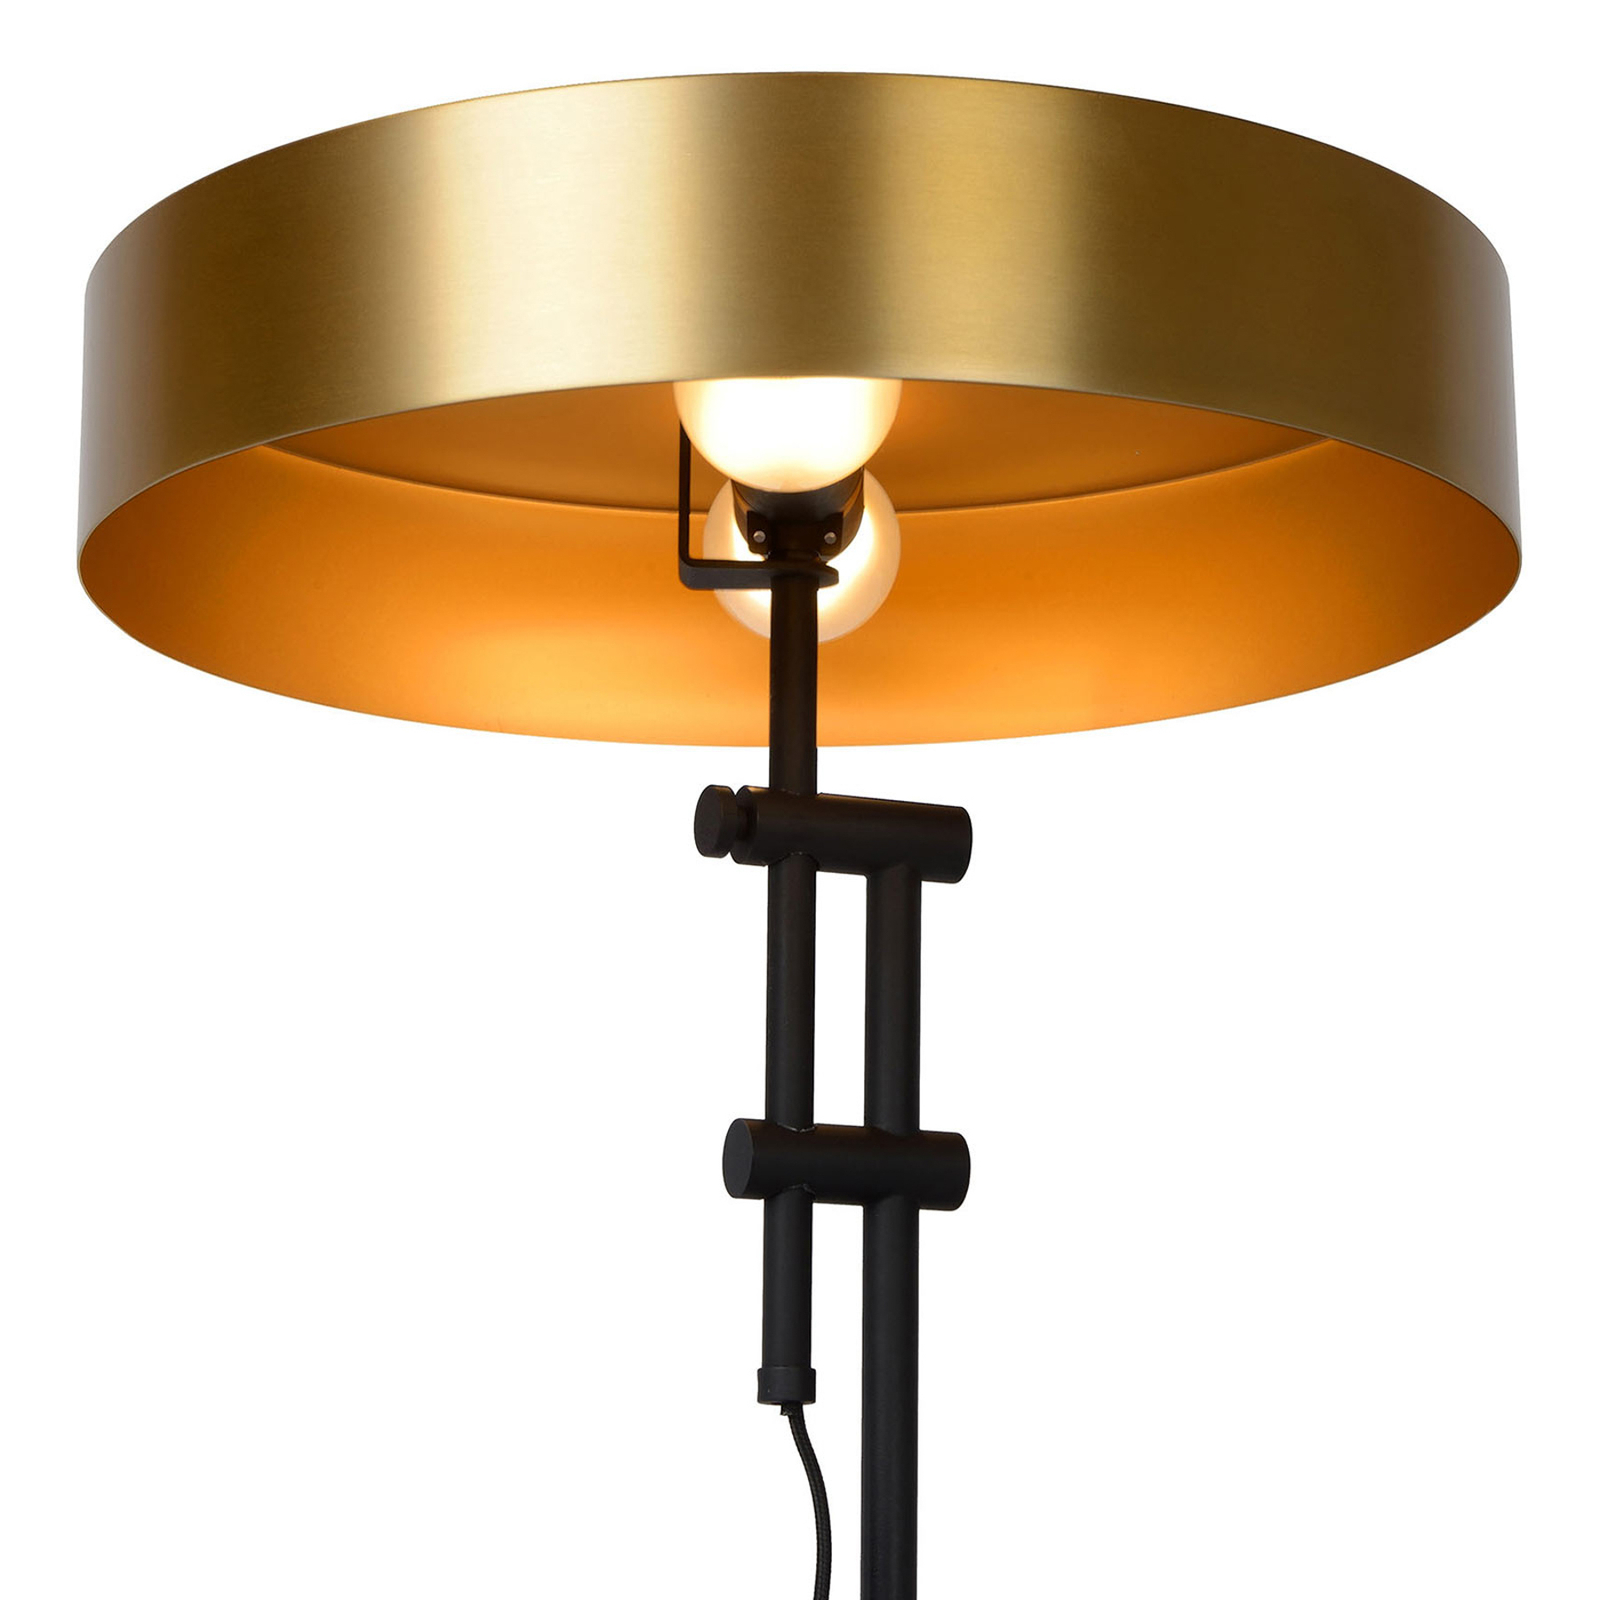 Giada bordlampe med flat skjerm i gull